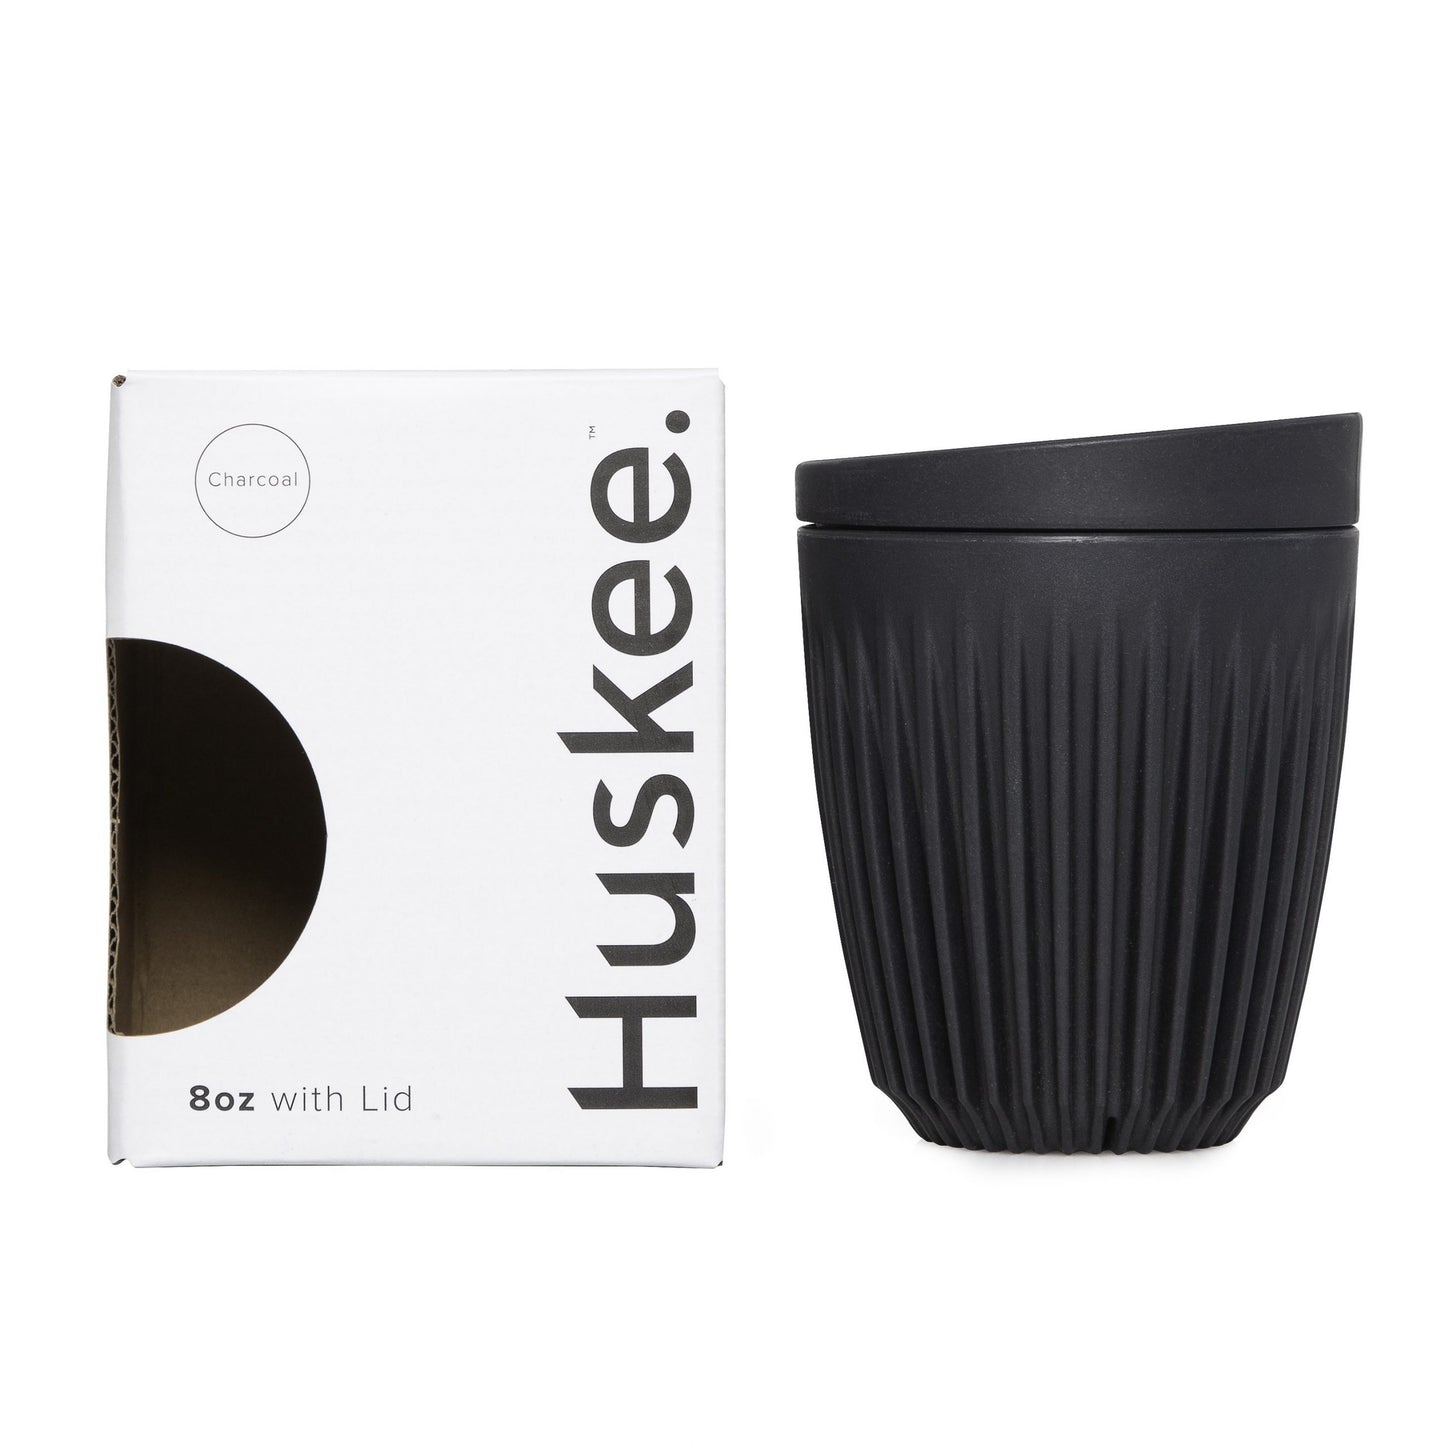 HUSKEE Travel mug